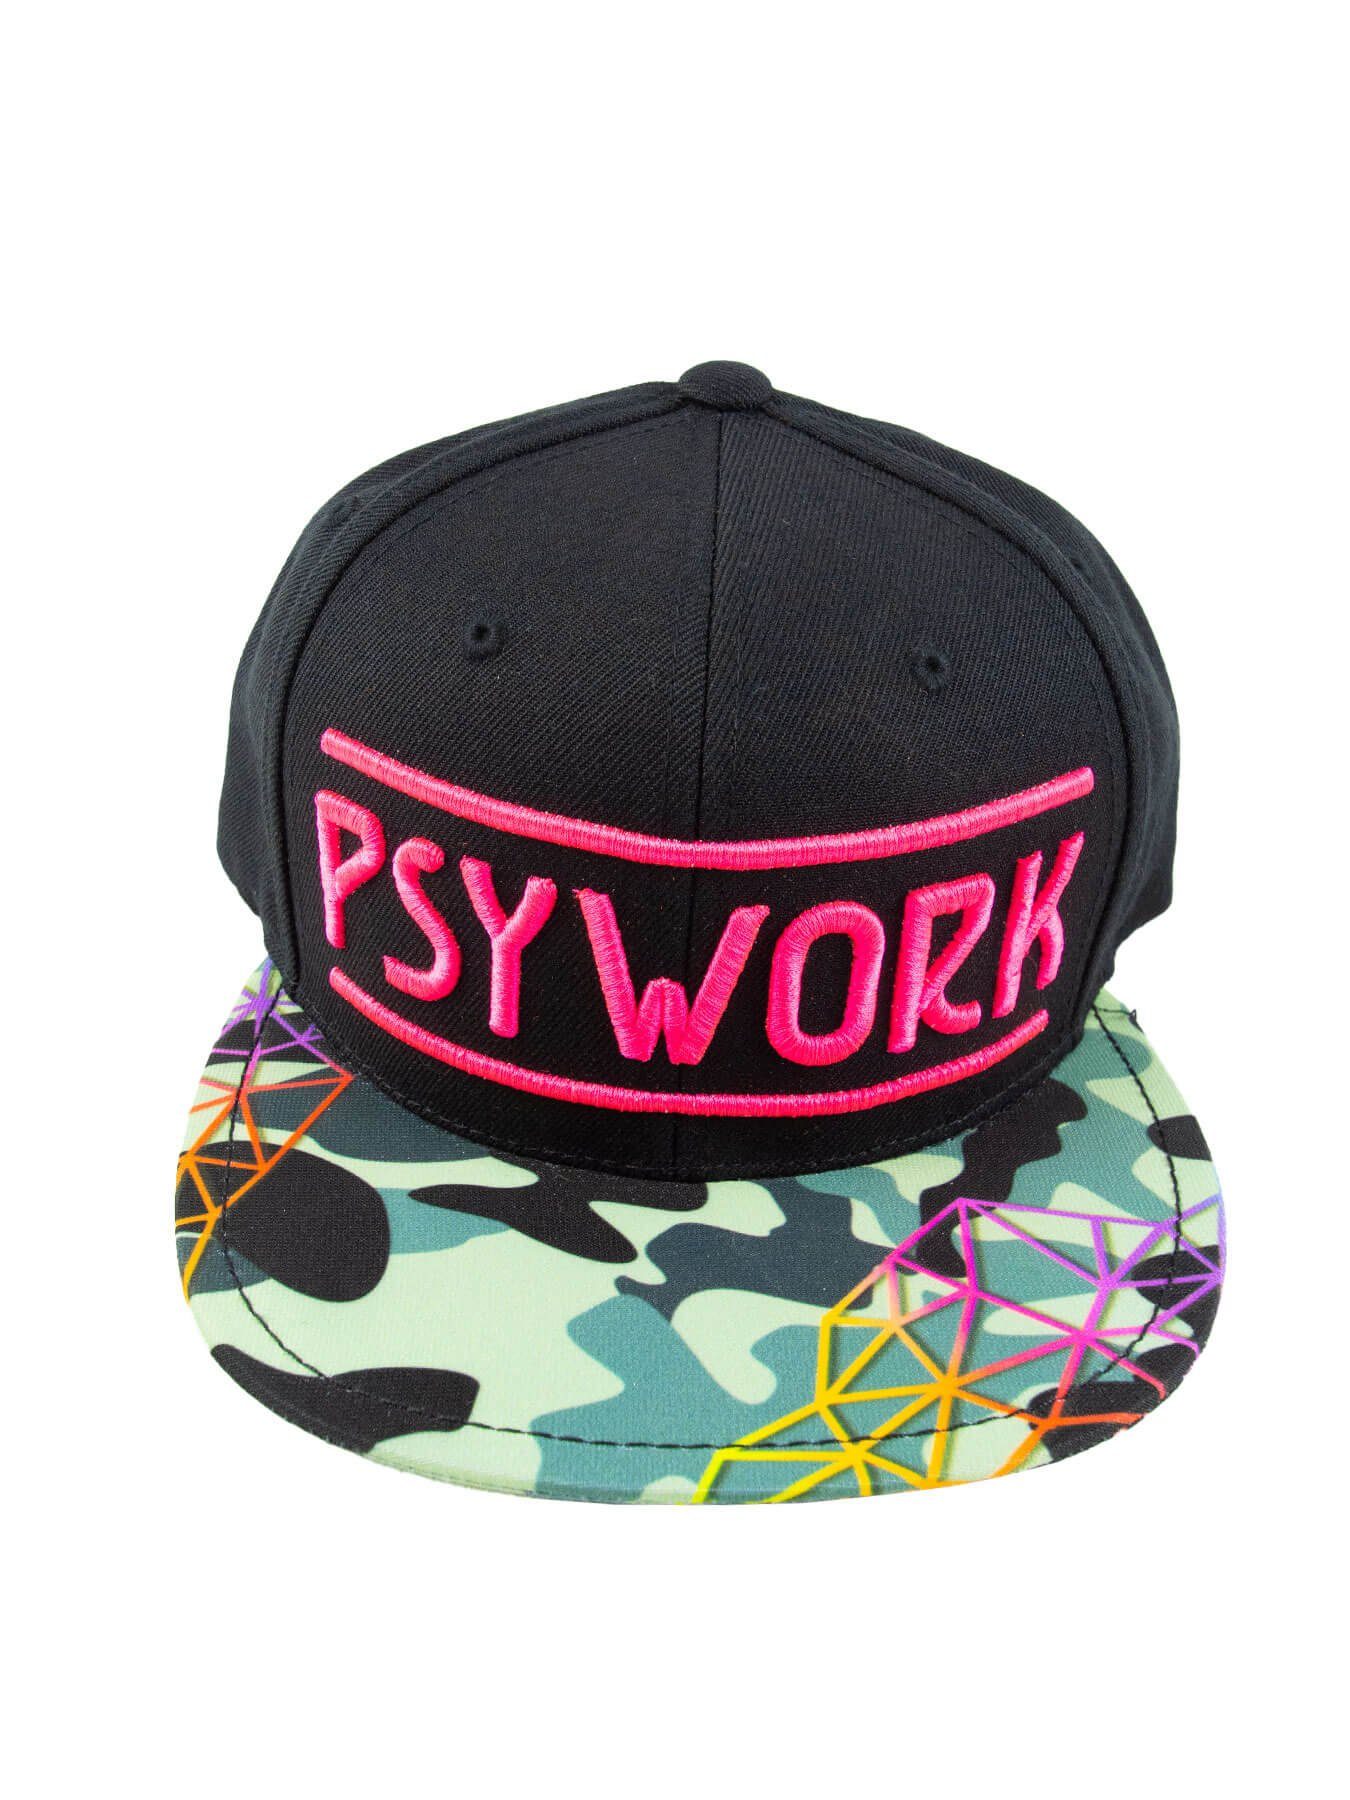 PSYWORK Snapback Black Schwarzlicht unter Pink Cap Schwarzlicht "Camouflage", Neon UV-aktiv, Cap leuchtet